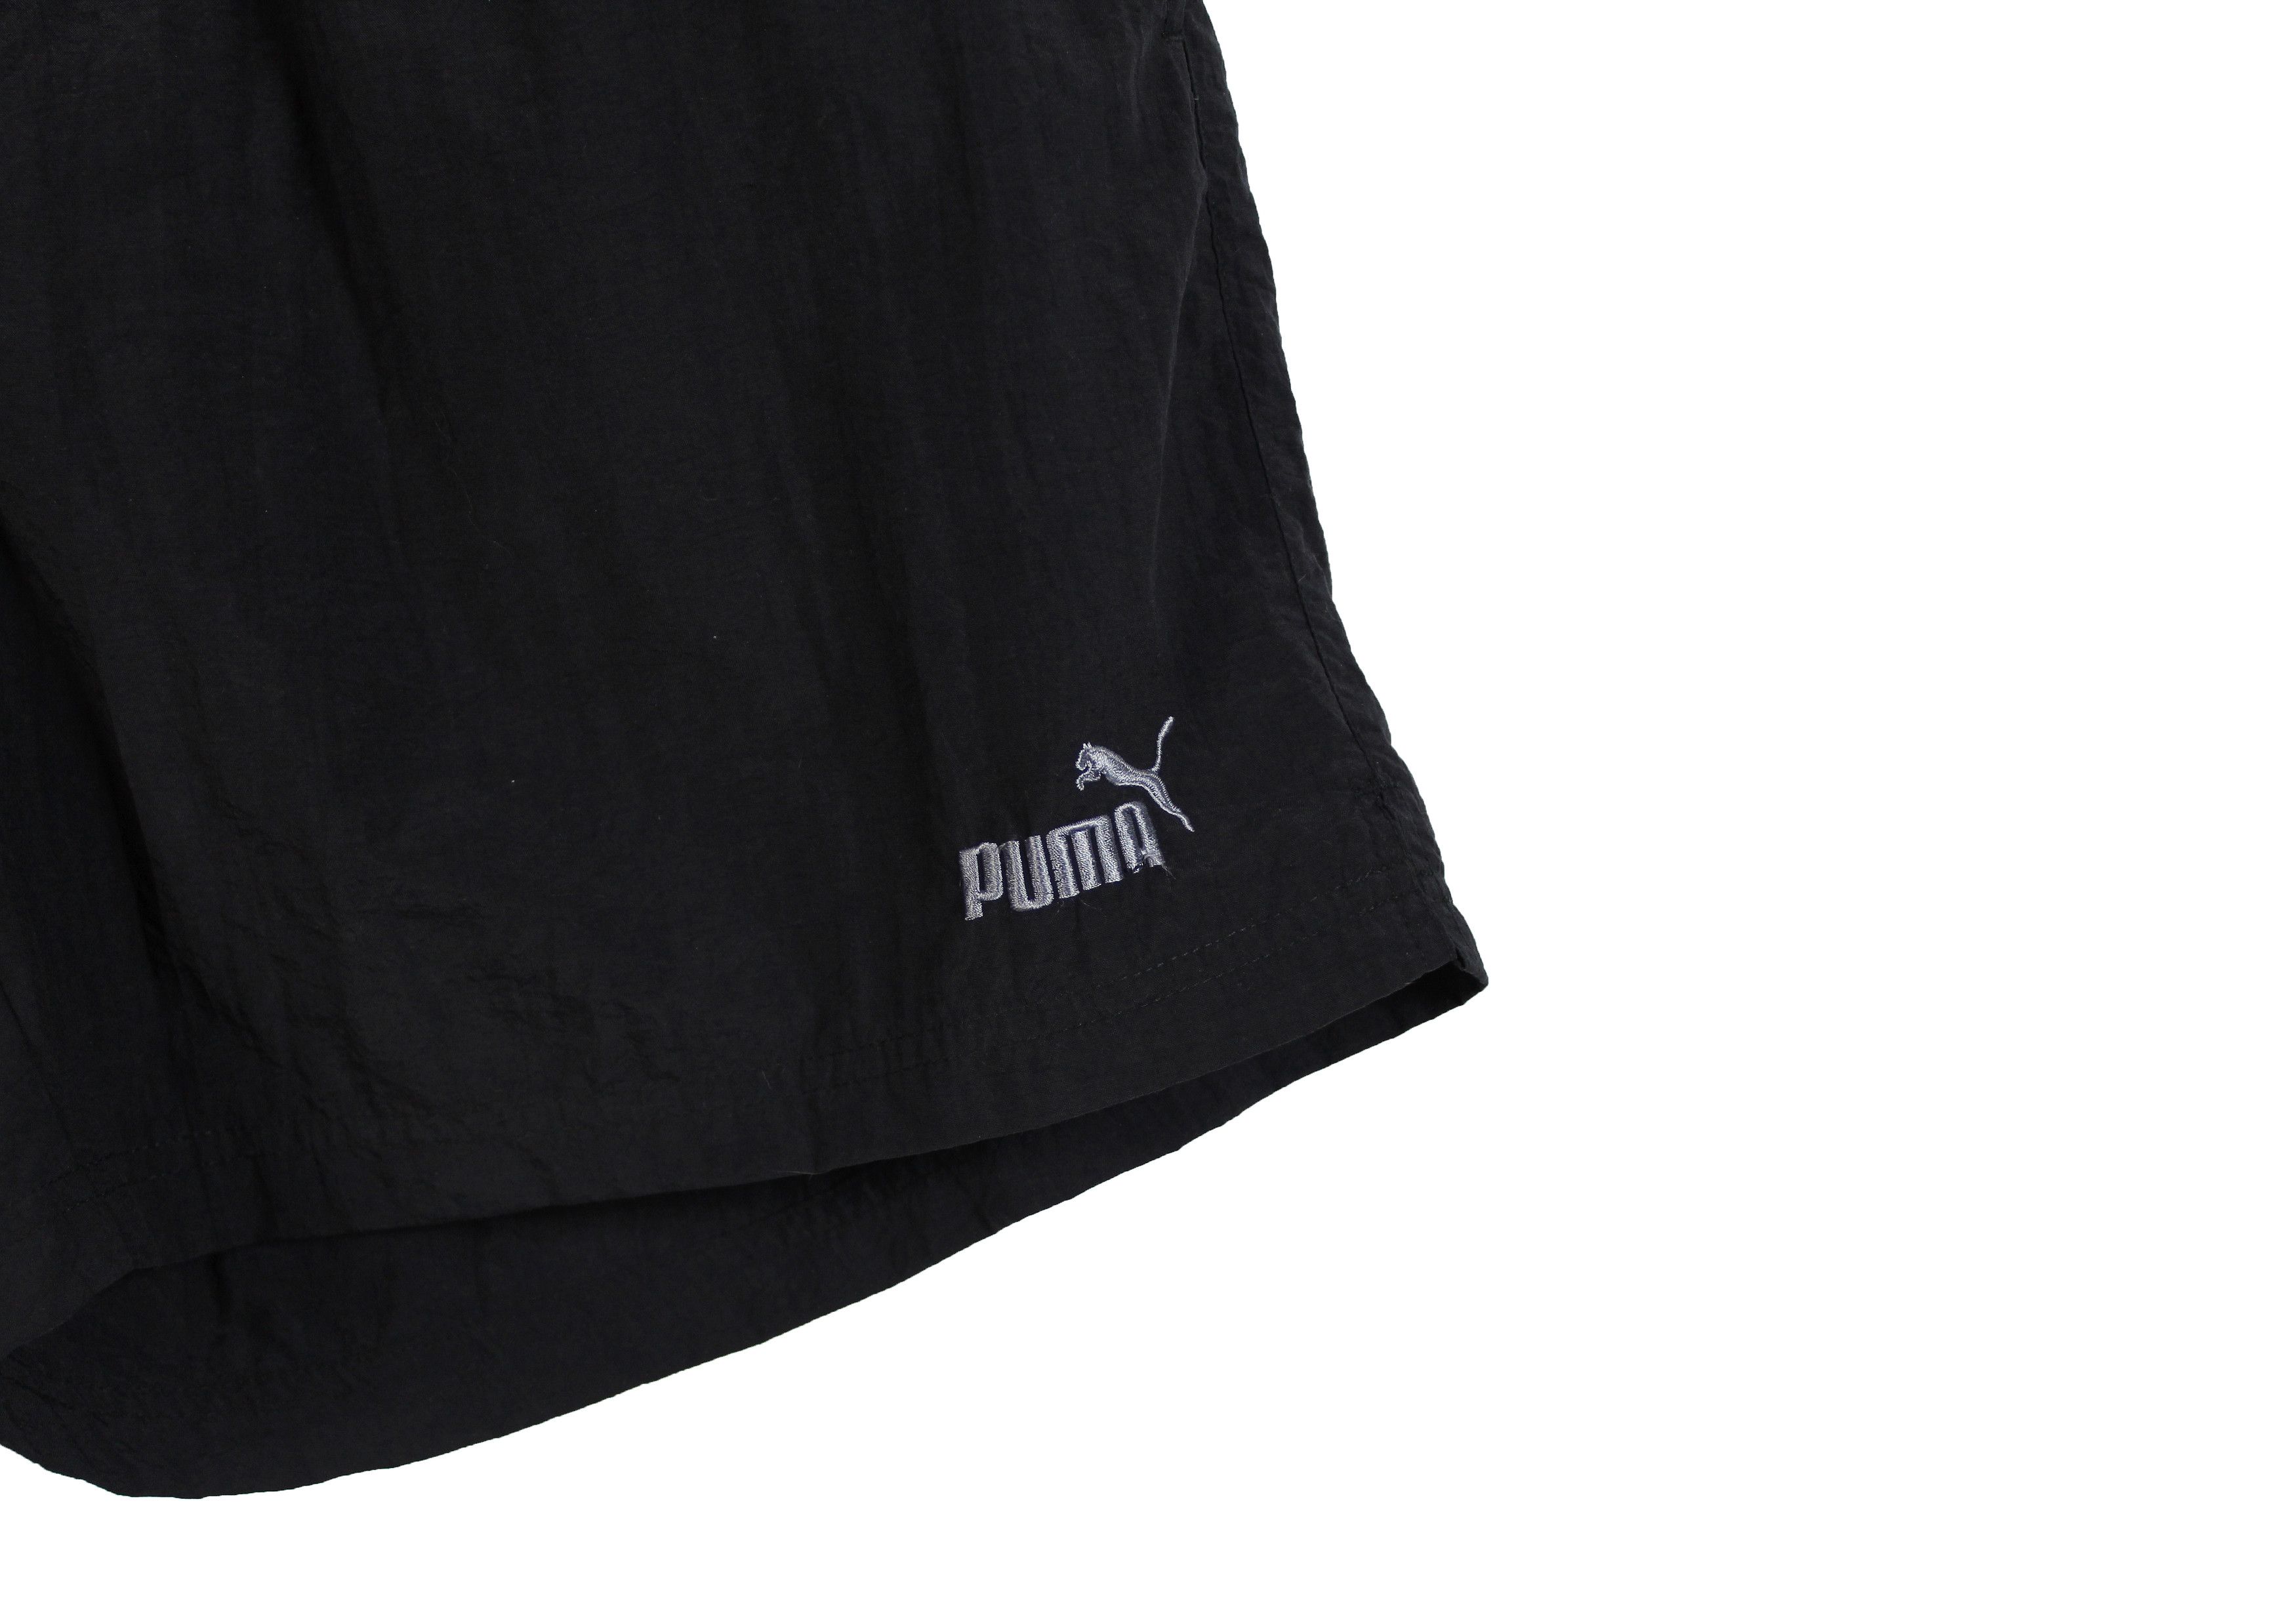 Vintage 90s vintage PUMA shorts black nylon athletic sports XL XXL Size 40" / US 18 - 3 Thumbnail